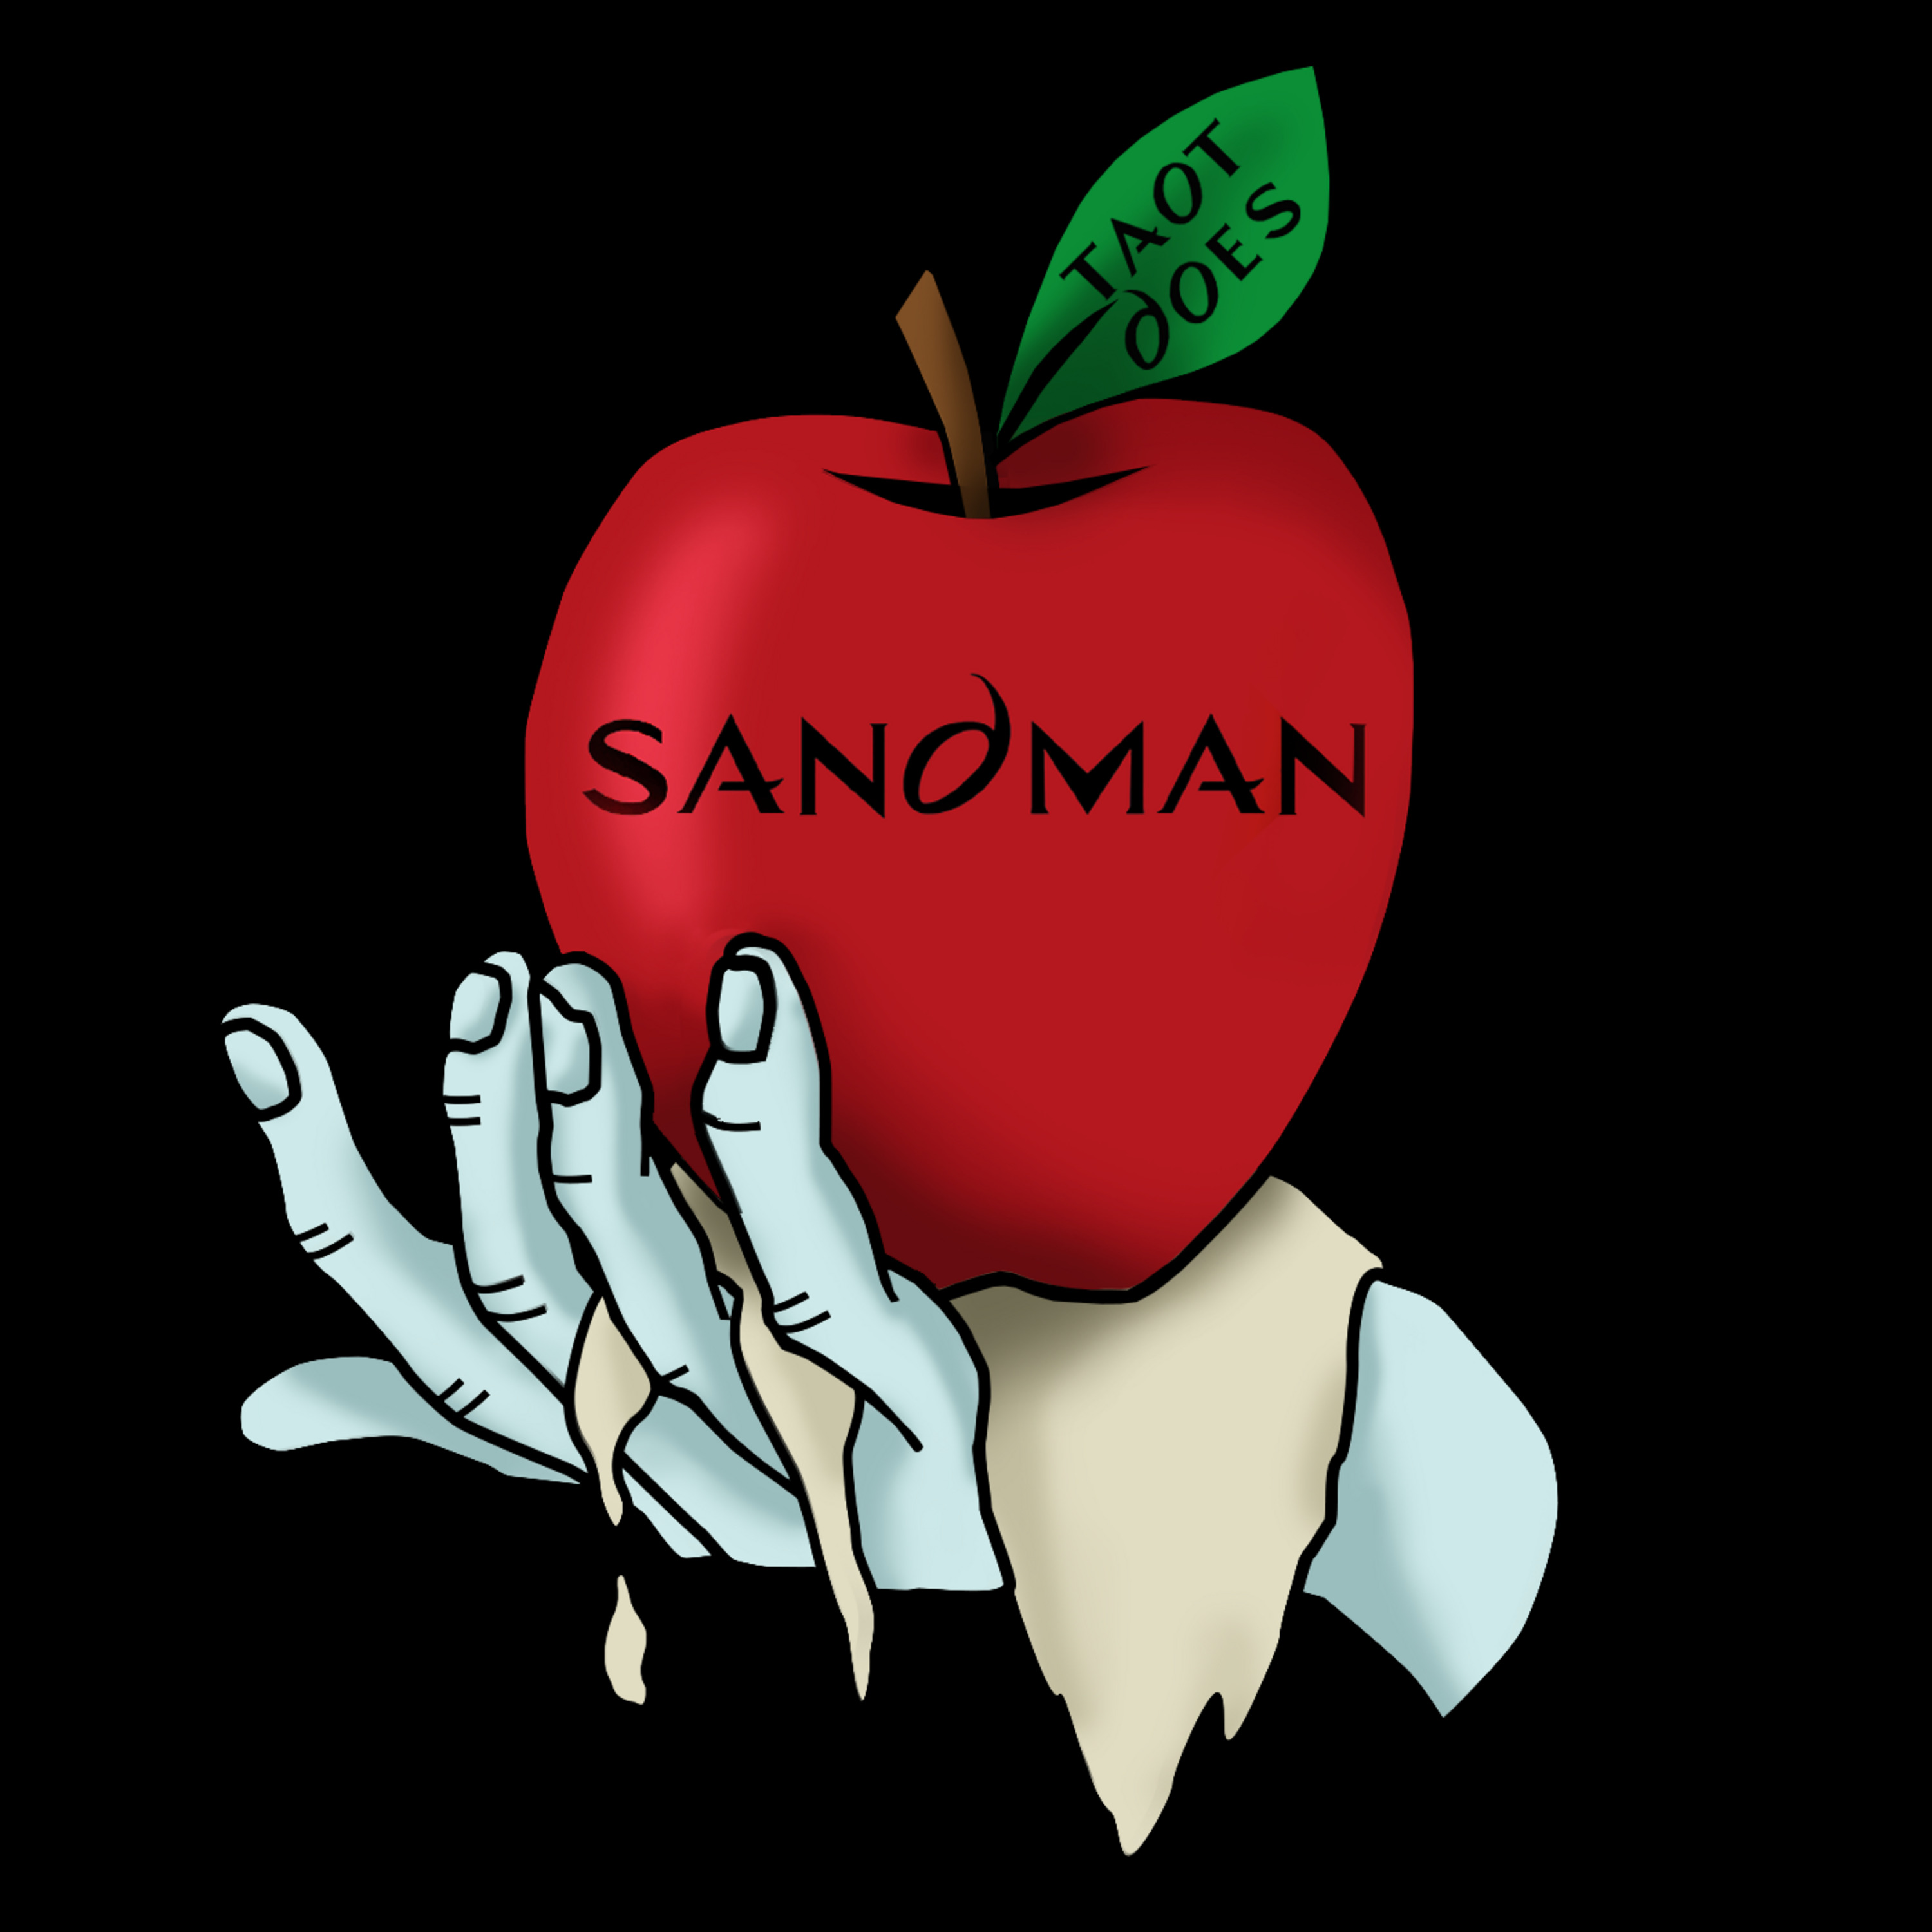 Episode 138: TAOT The Sandman S1E05